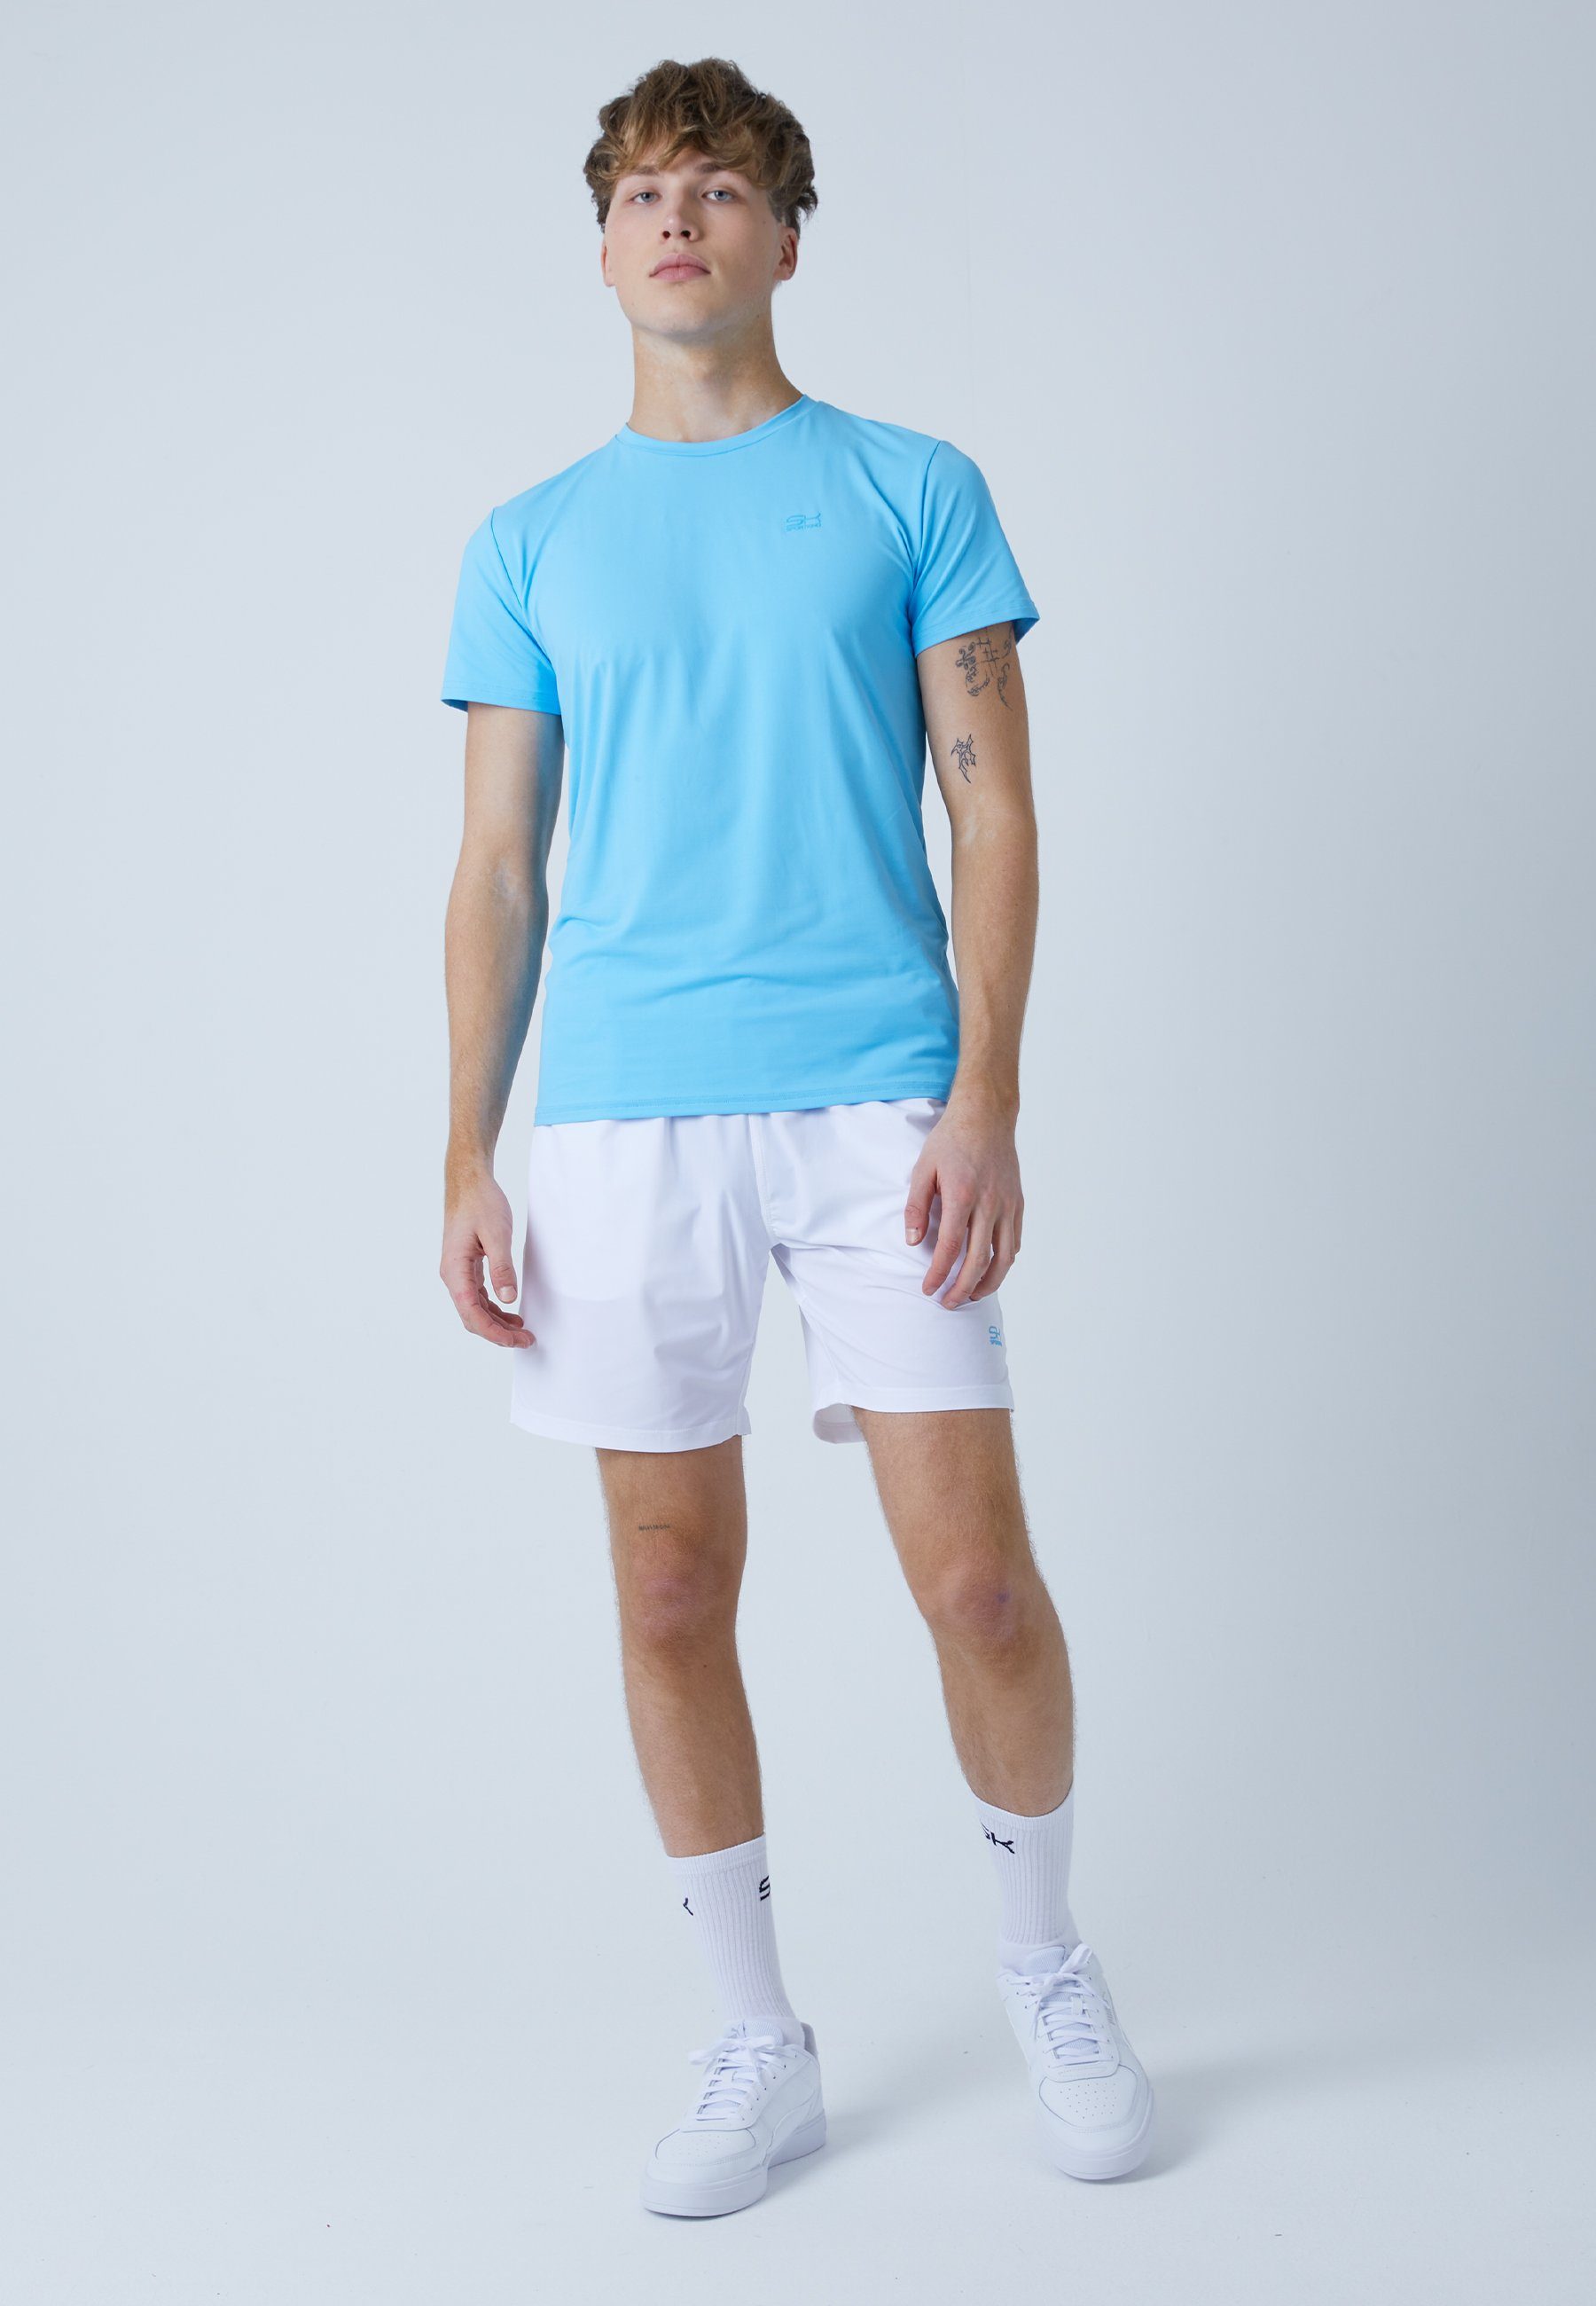 SPORTKIND hellblau Tennis Funktionsshirt T-Shirt Jungen Herren & Rundhals